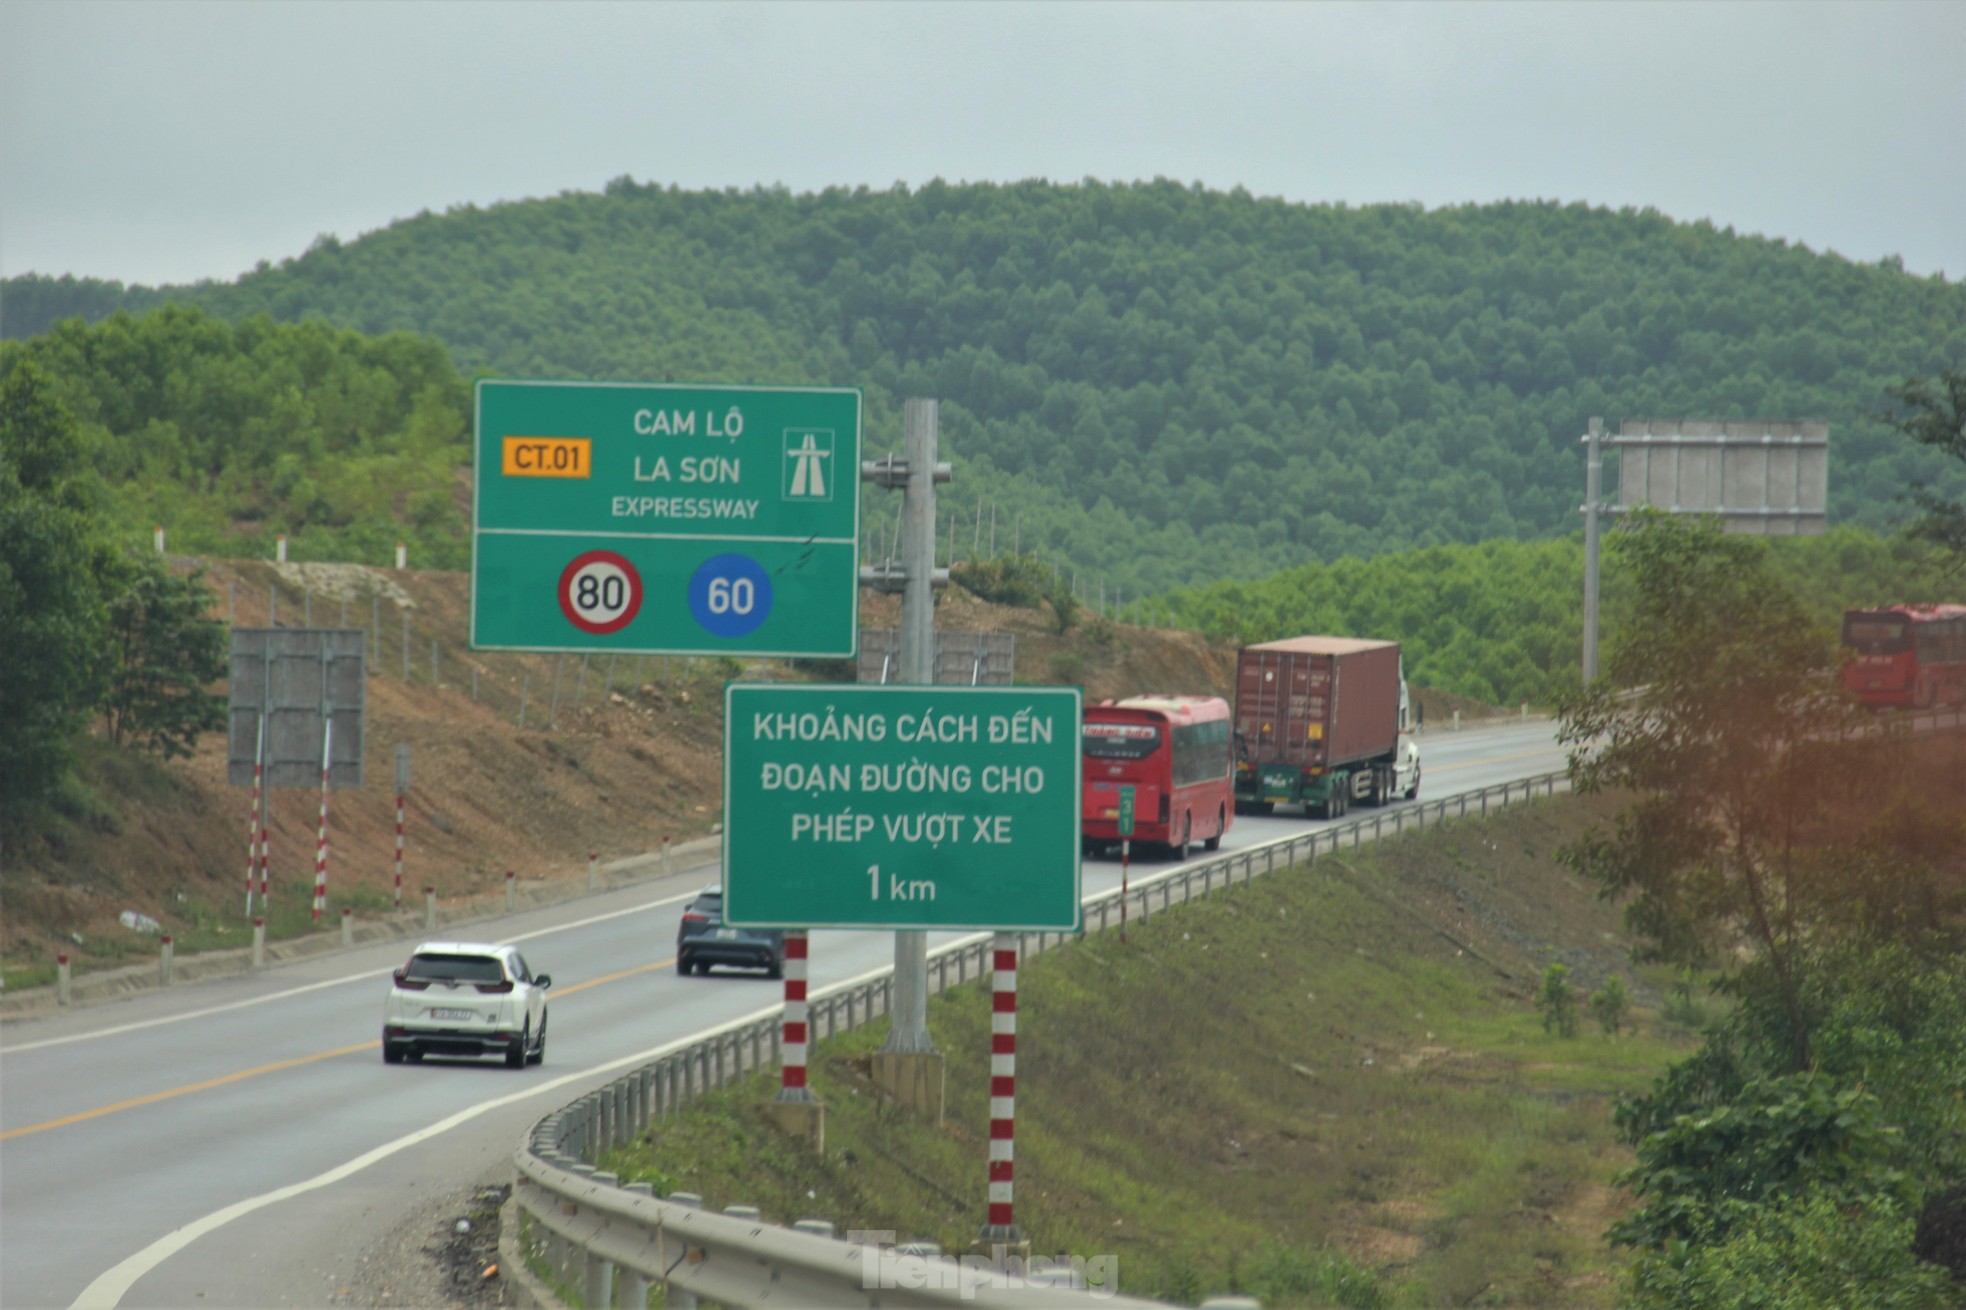 Đường càng đông, vượt ẩu càng nhiều trên cao tốc Túy Loan - La Sơn - Cam Lộ- Ảnh 1.